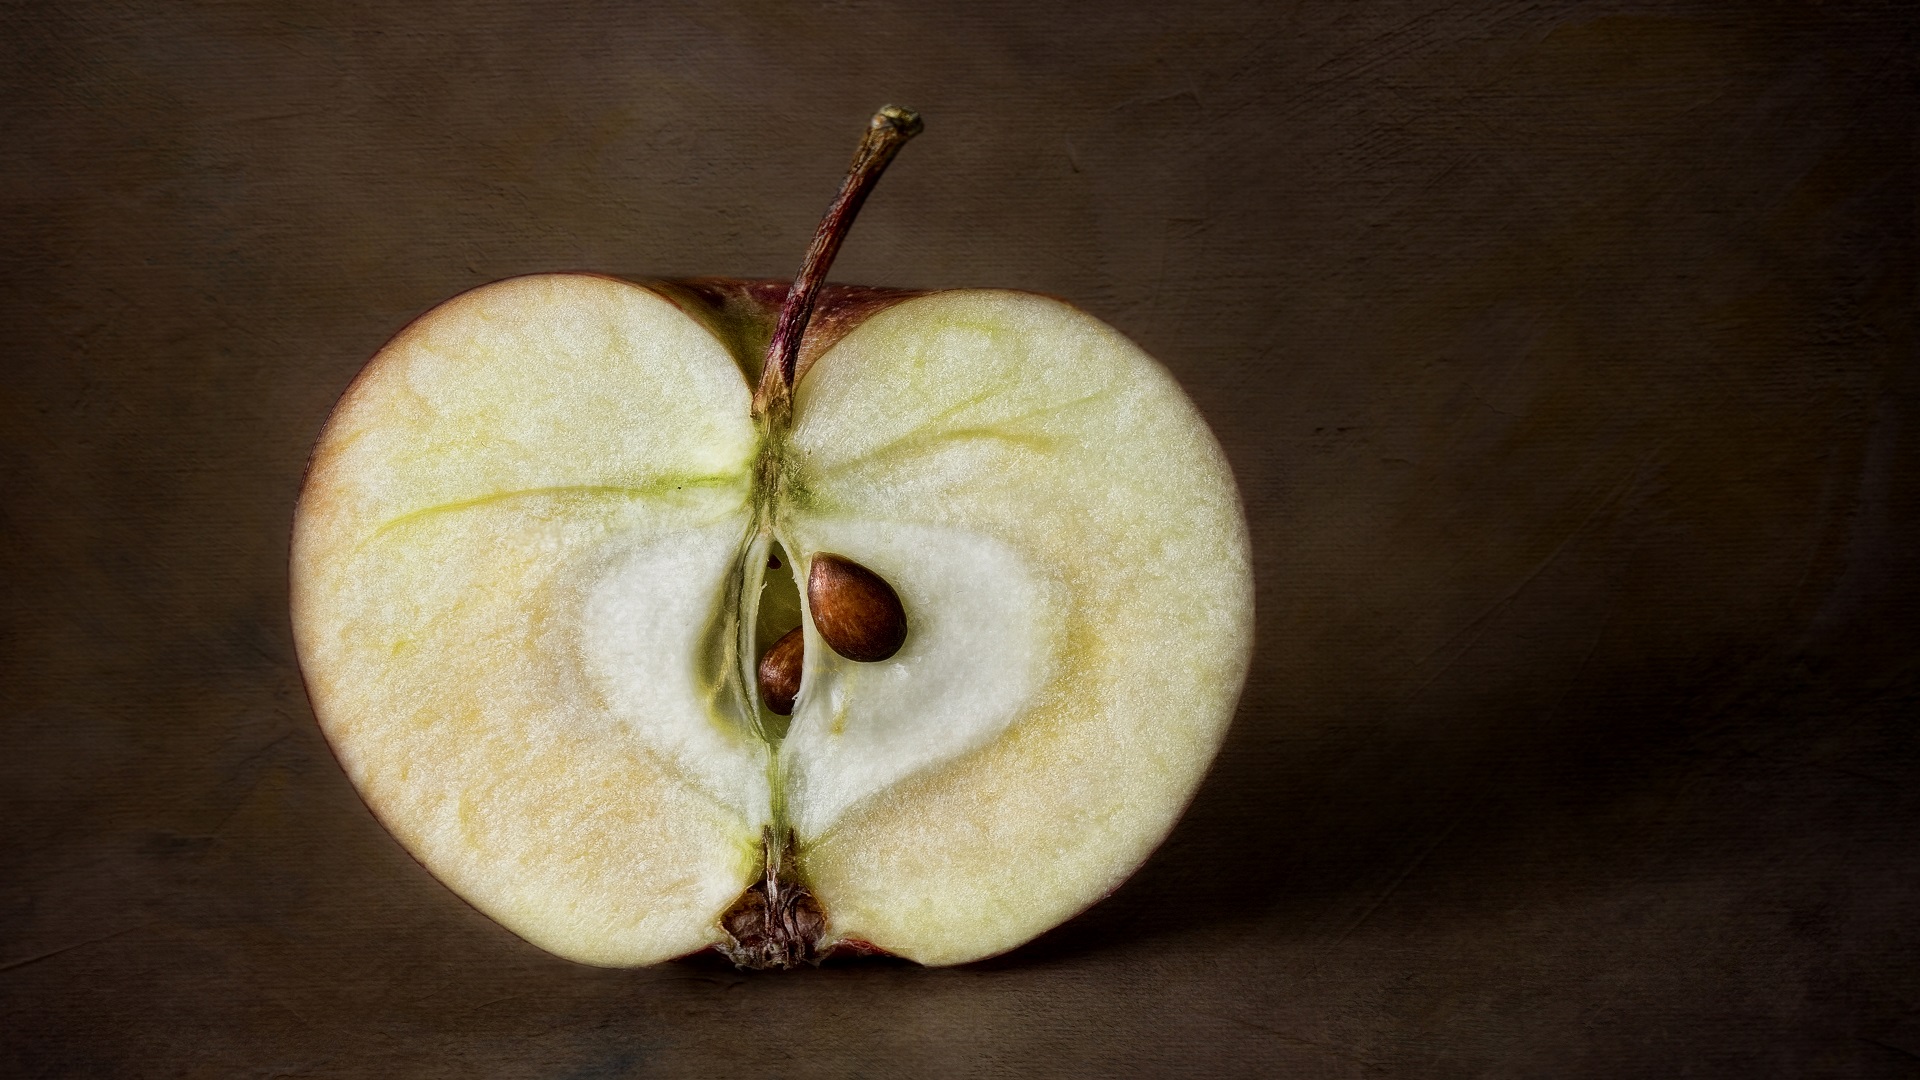 تقطيع التفاحة يعتبر تغيرًا كيميائيًا